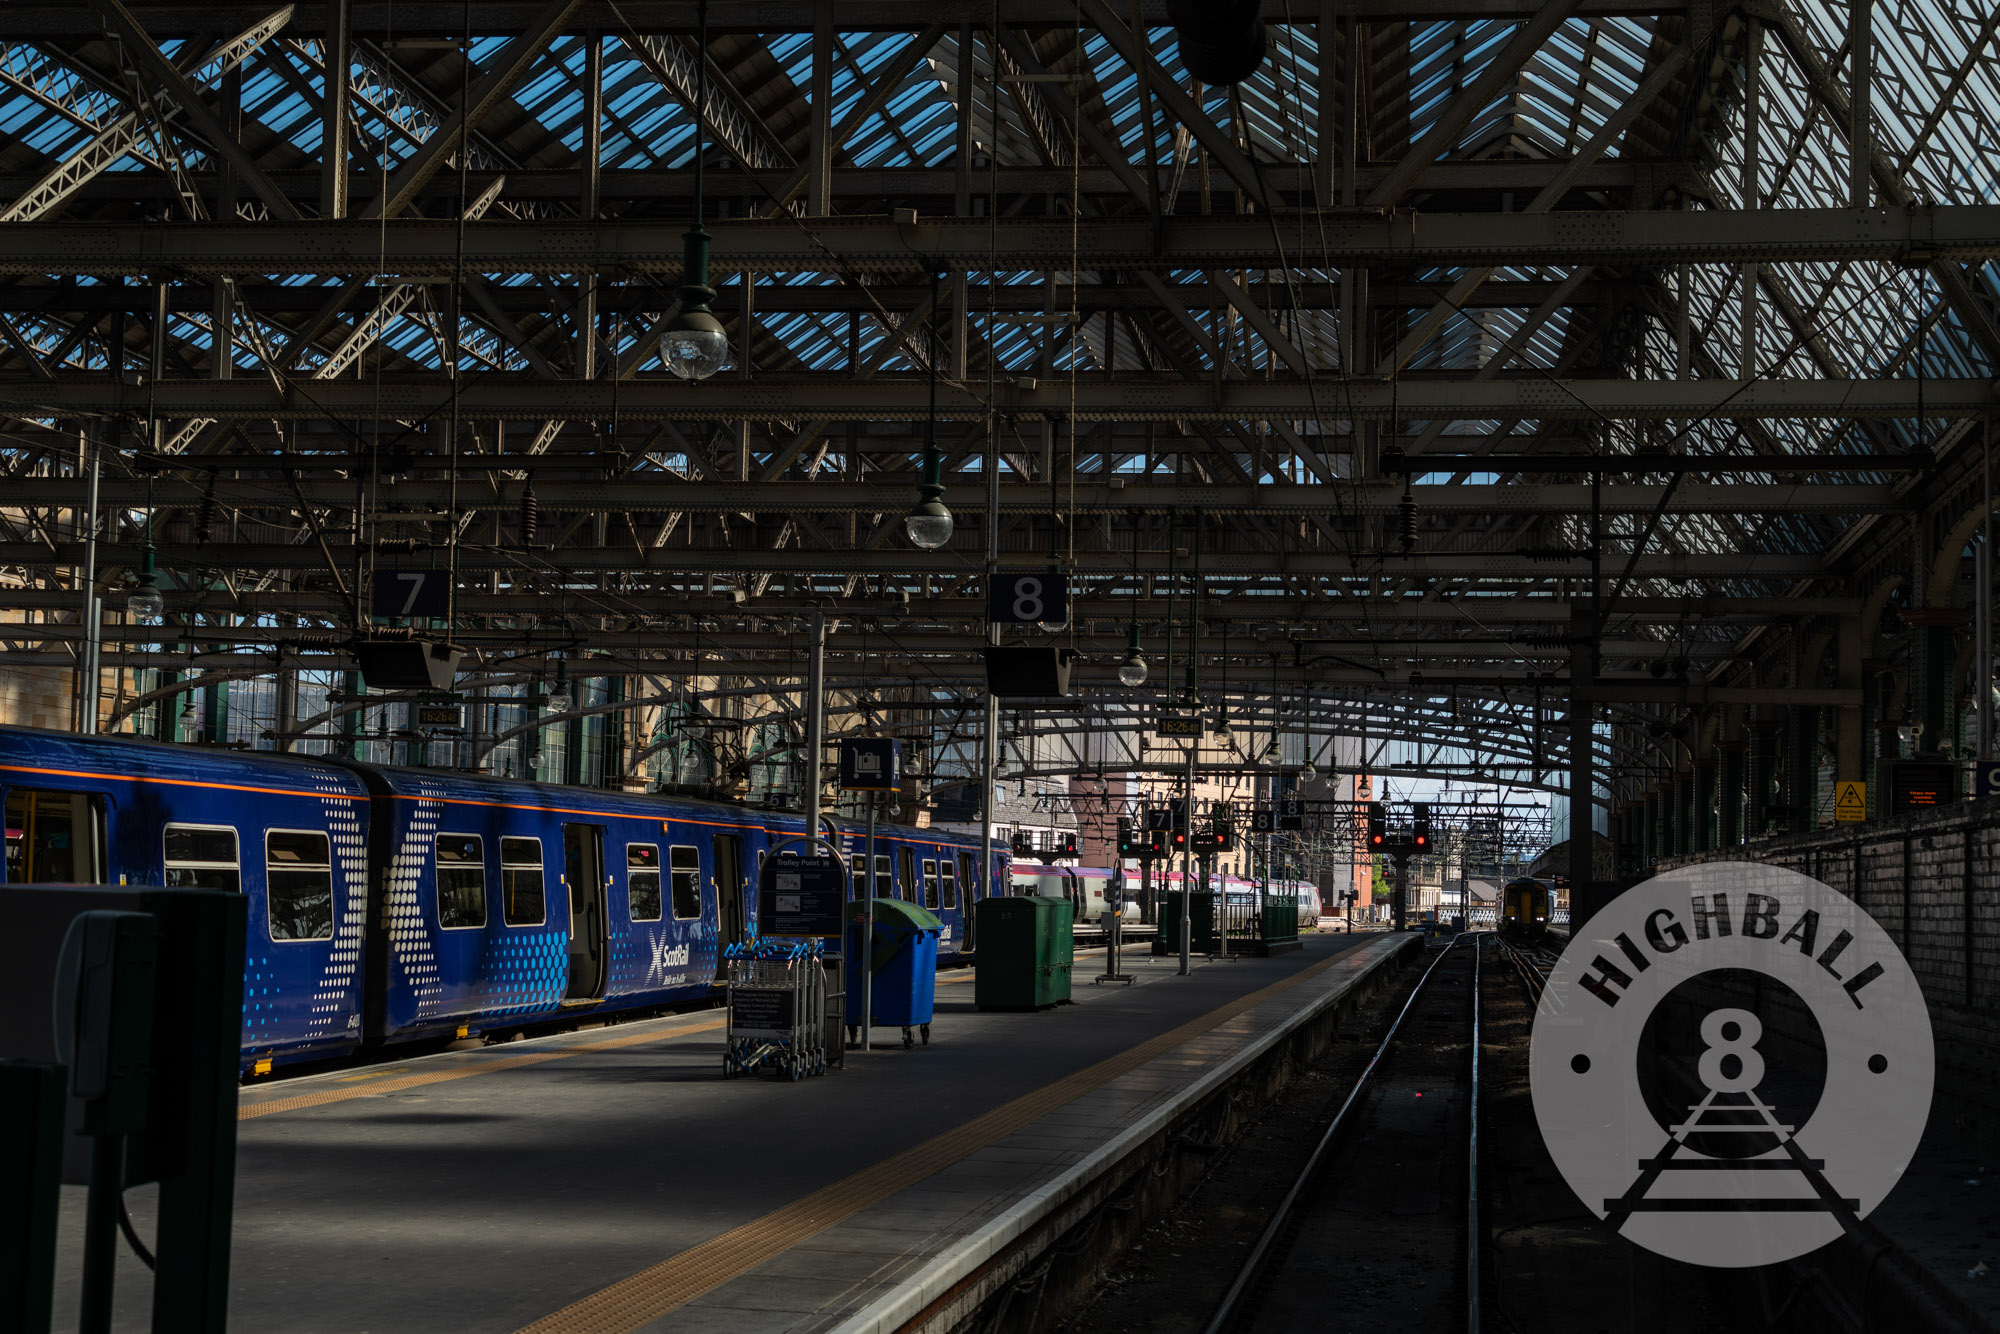 Glasgow Central Station, Glasgow, Scotland, UK, 2018.